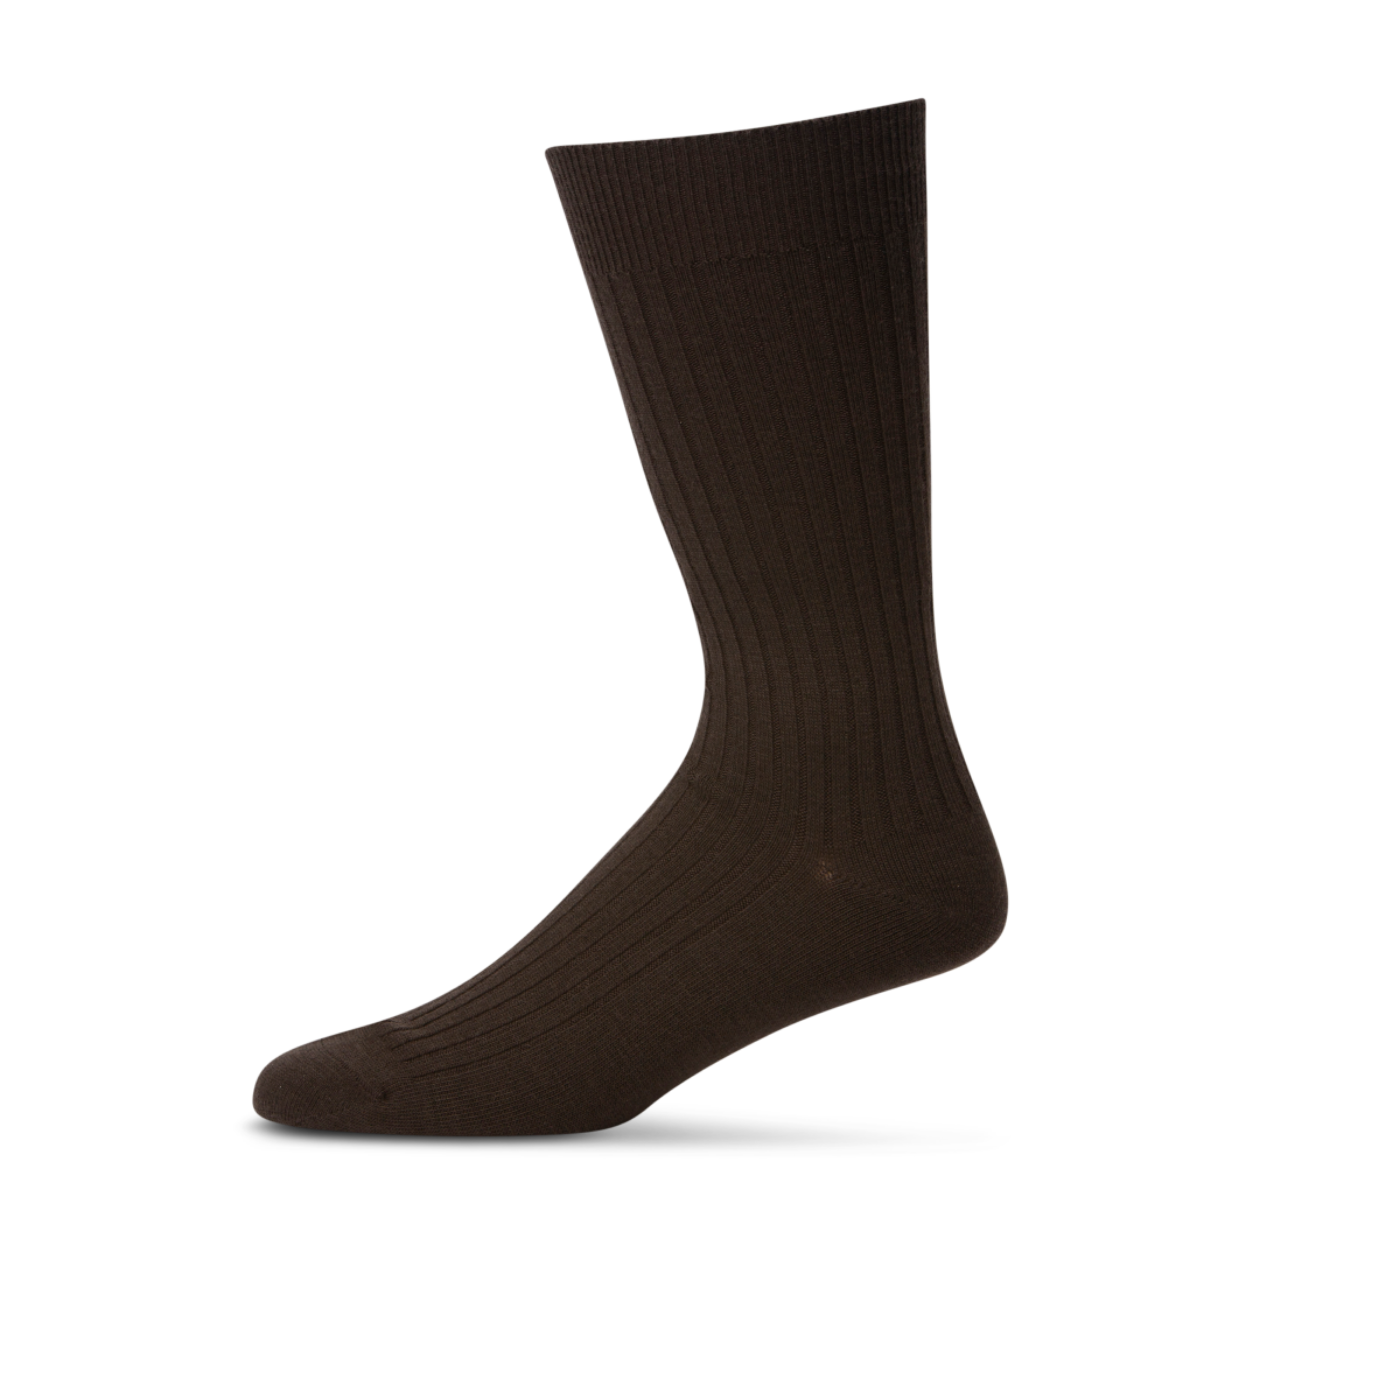 Pussyfoot Merino Wool Socks Men's 7-10 Dark Brown